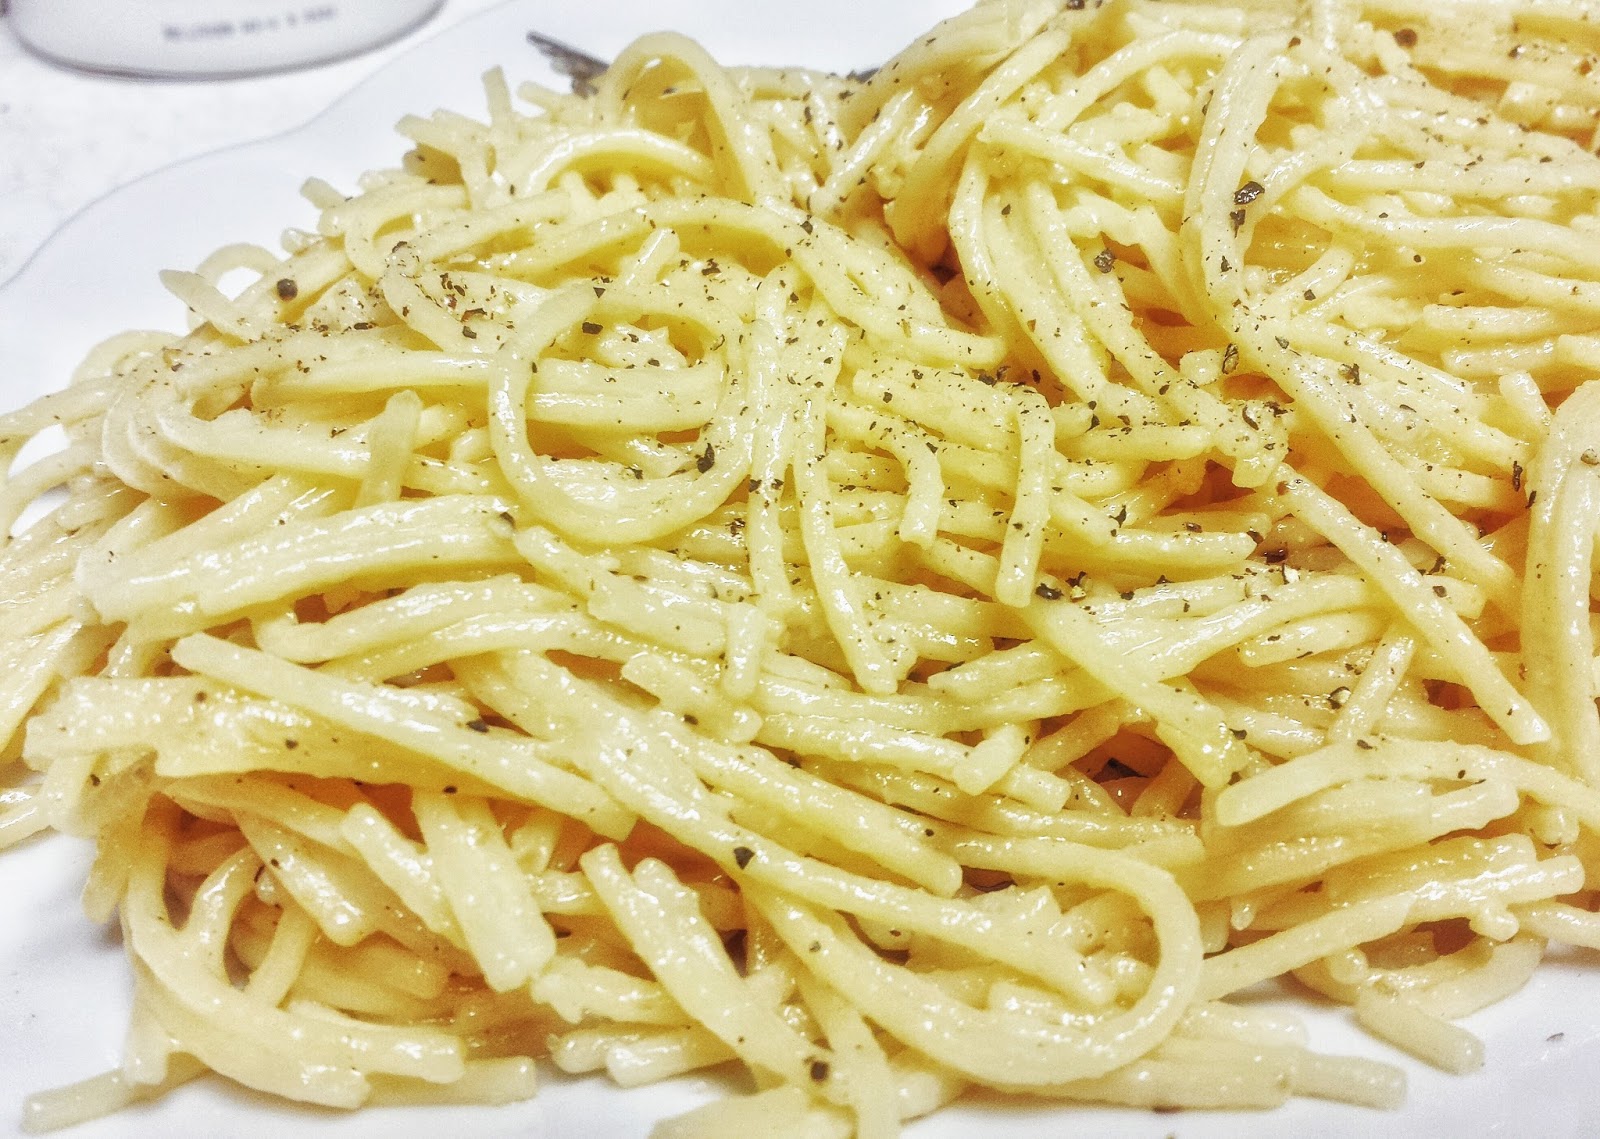 spaghetti cacio e pepe - kitchen discoveries